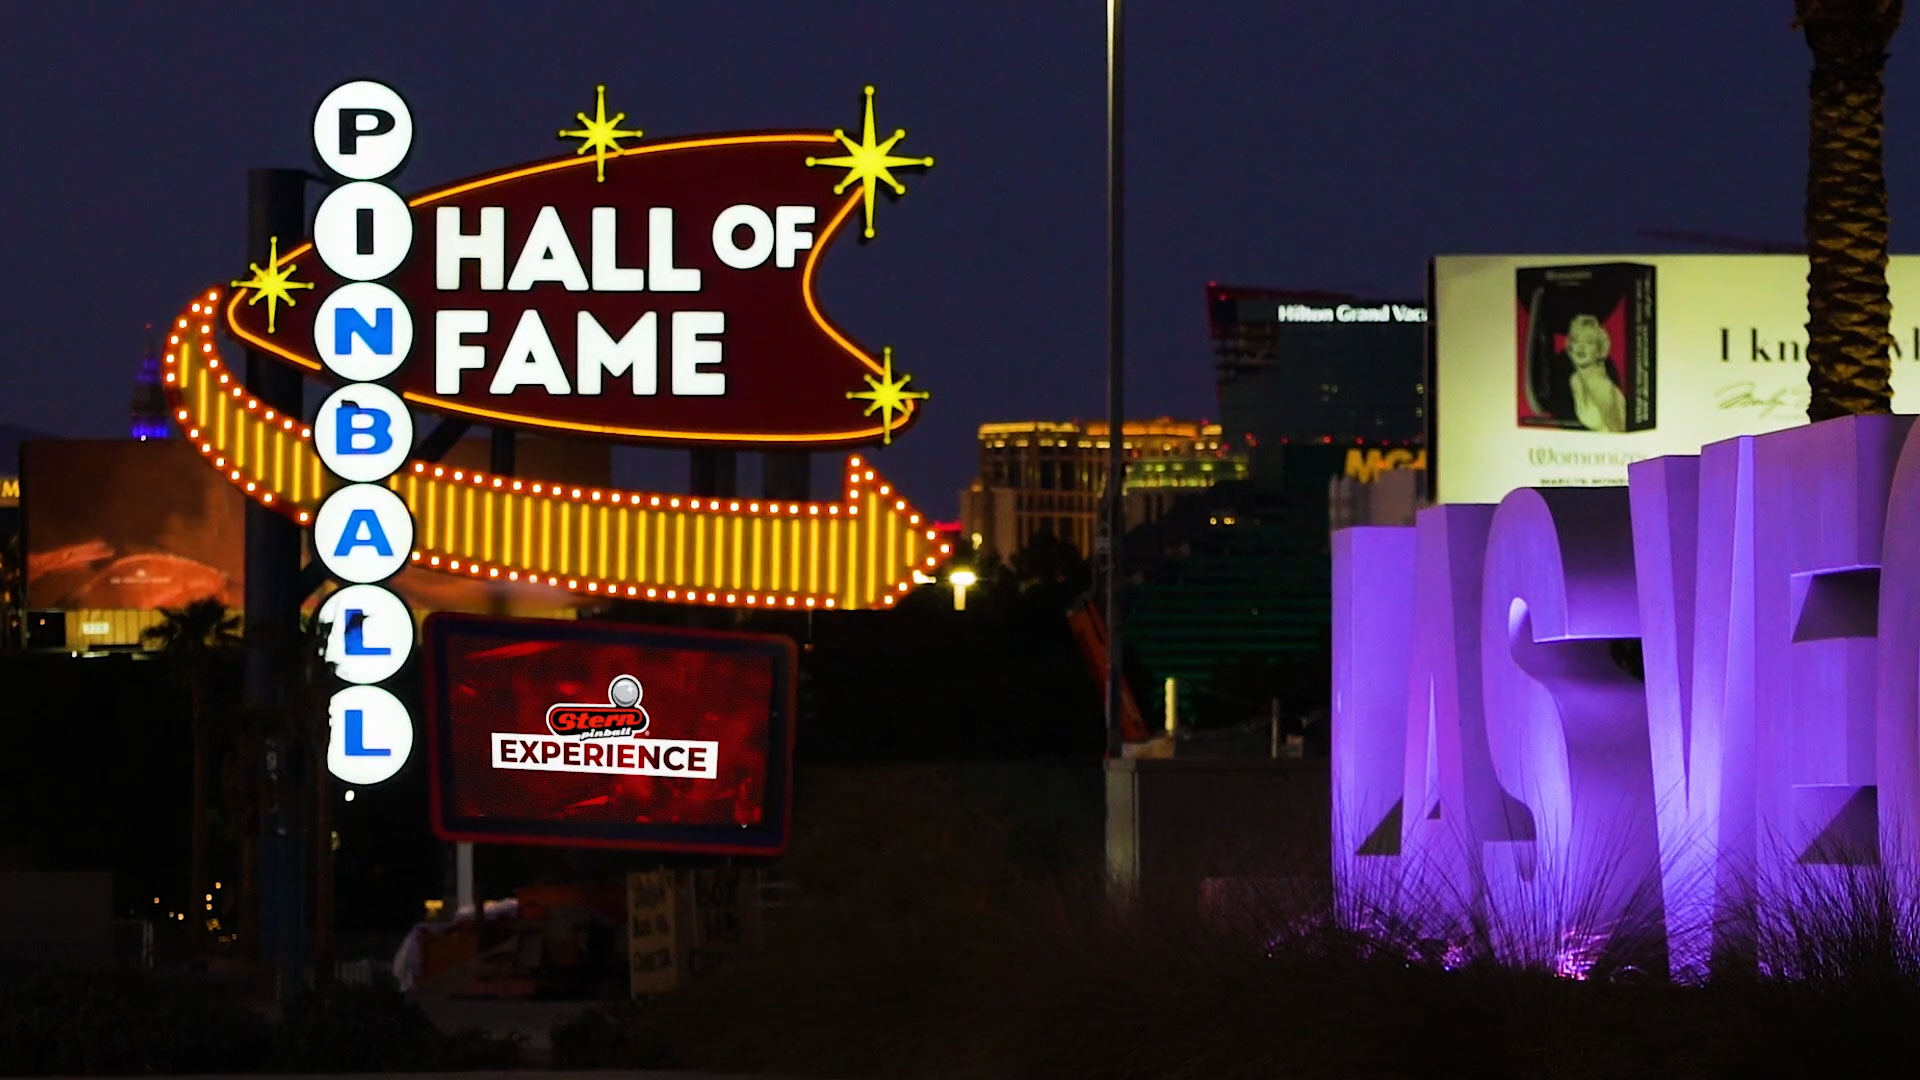 Pinball Hall of Fame - Las Vegas - RUSH pinball now at The Pinball